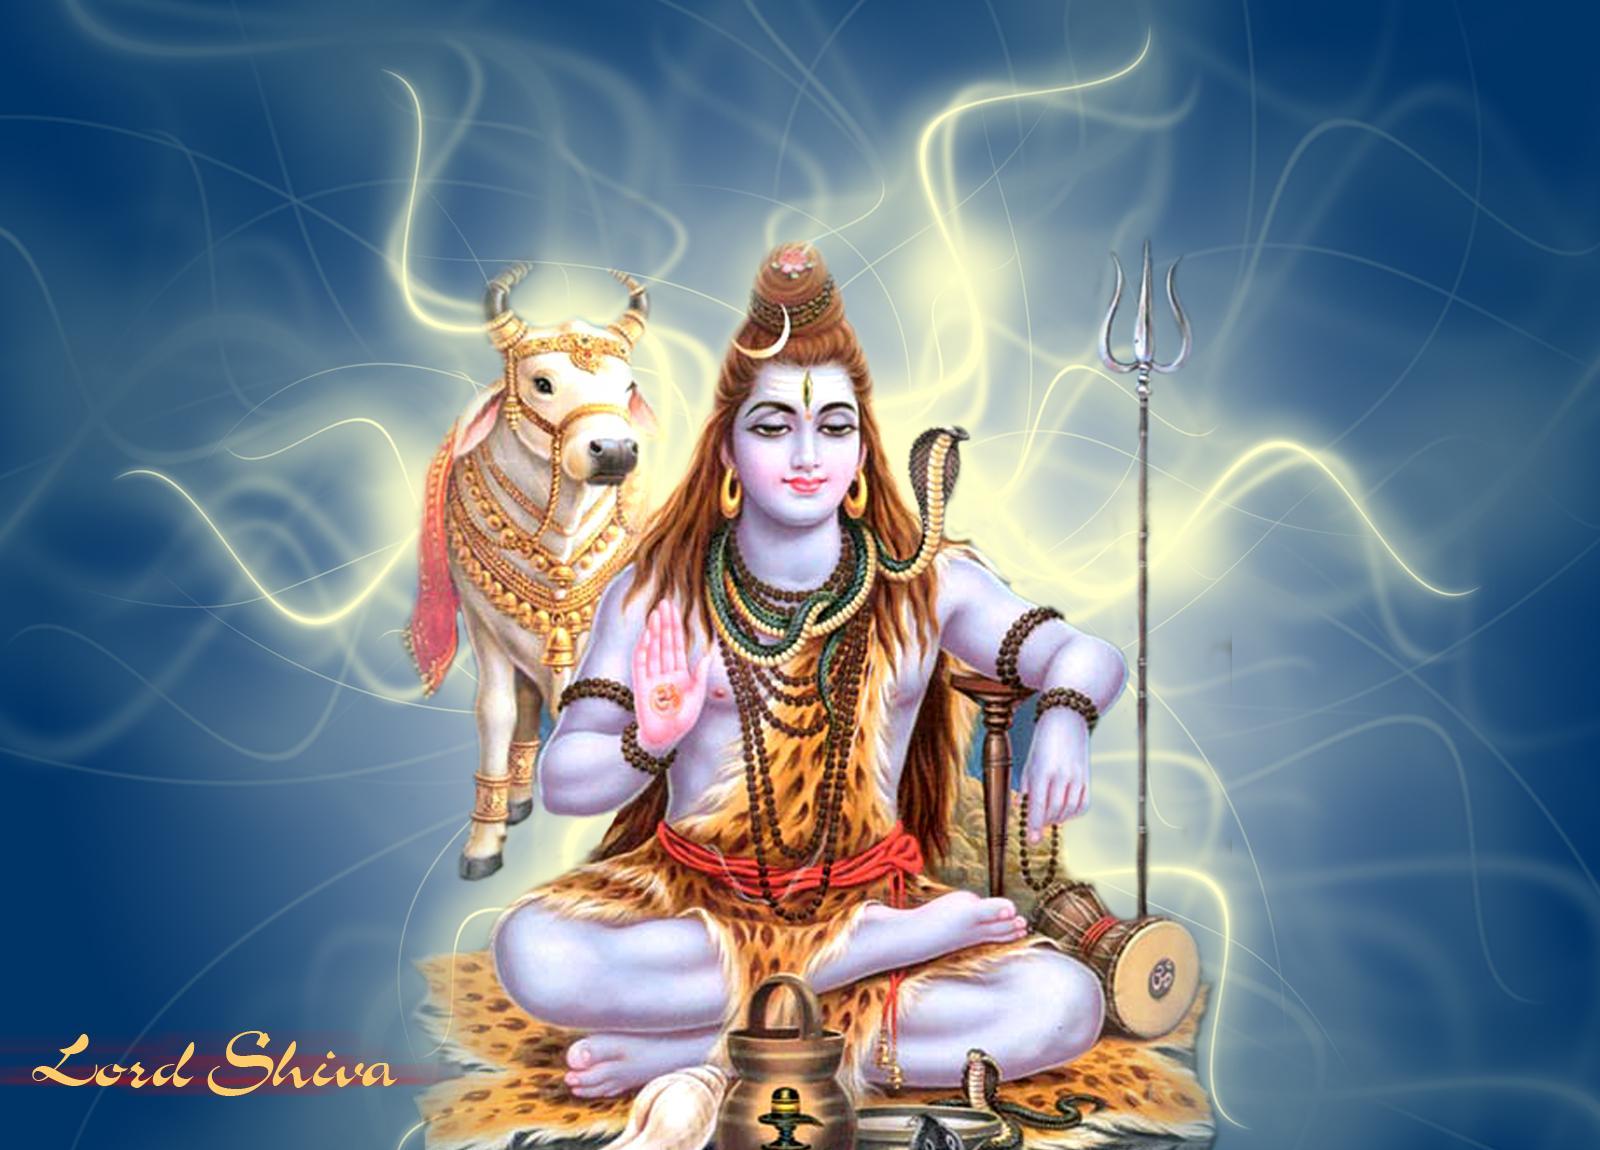 Wallpaper Hindu God Shiva Lord Gets Angry